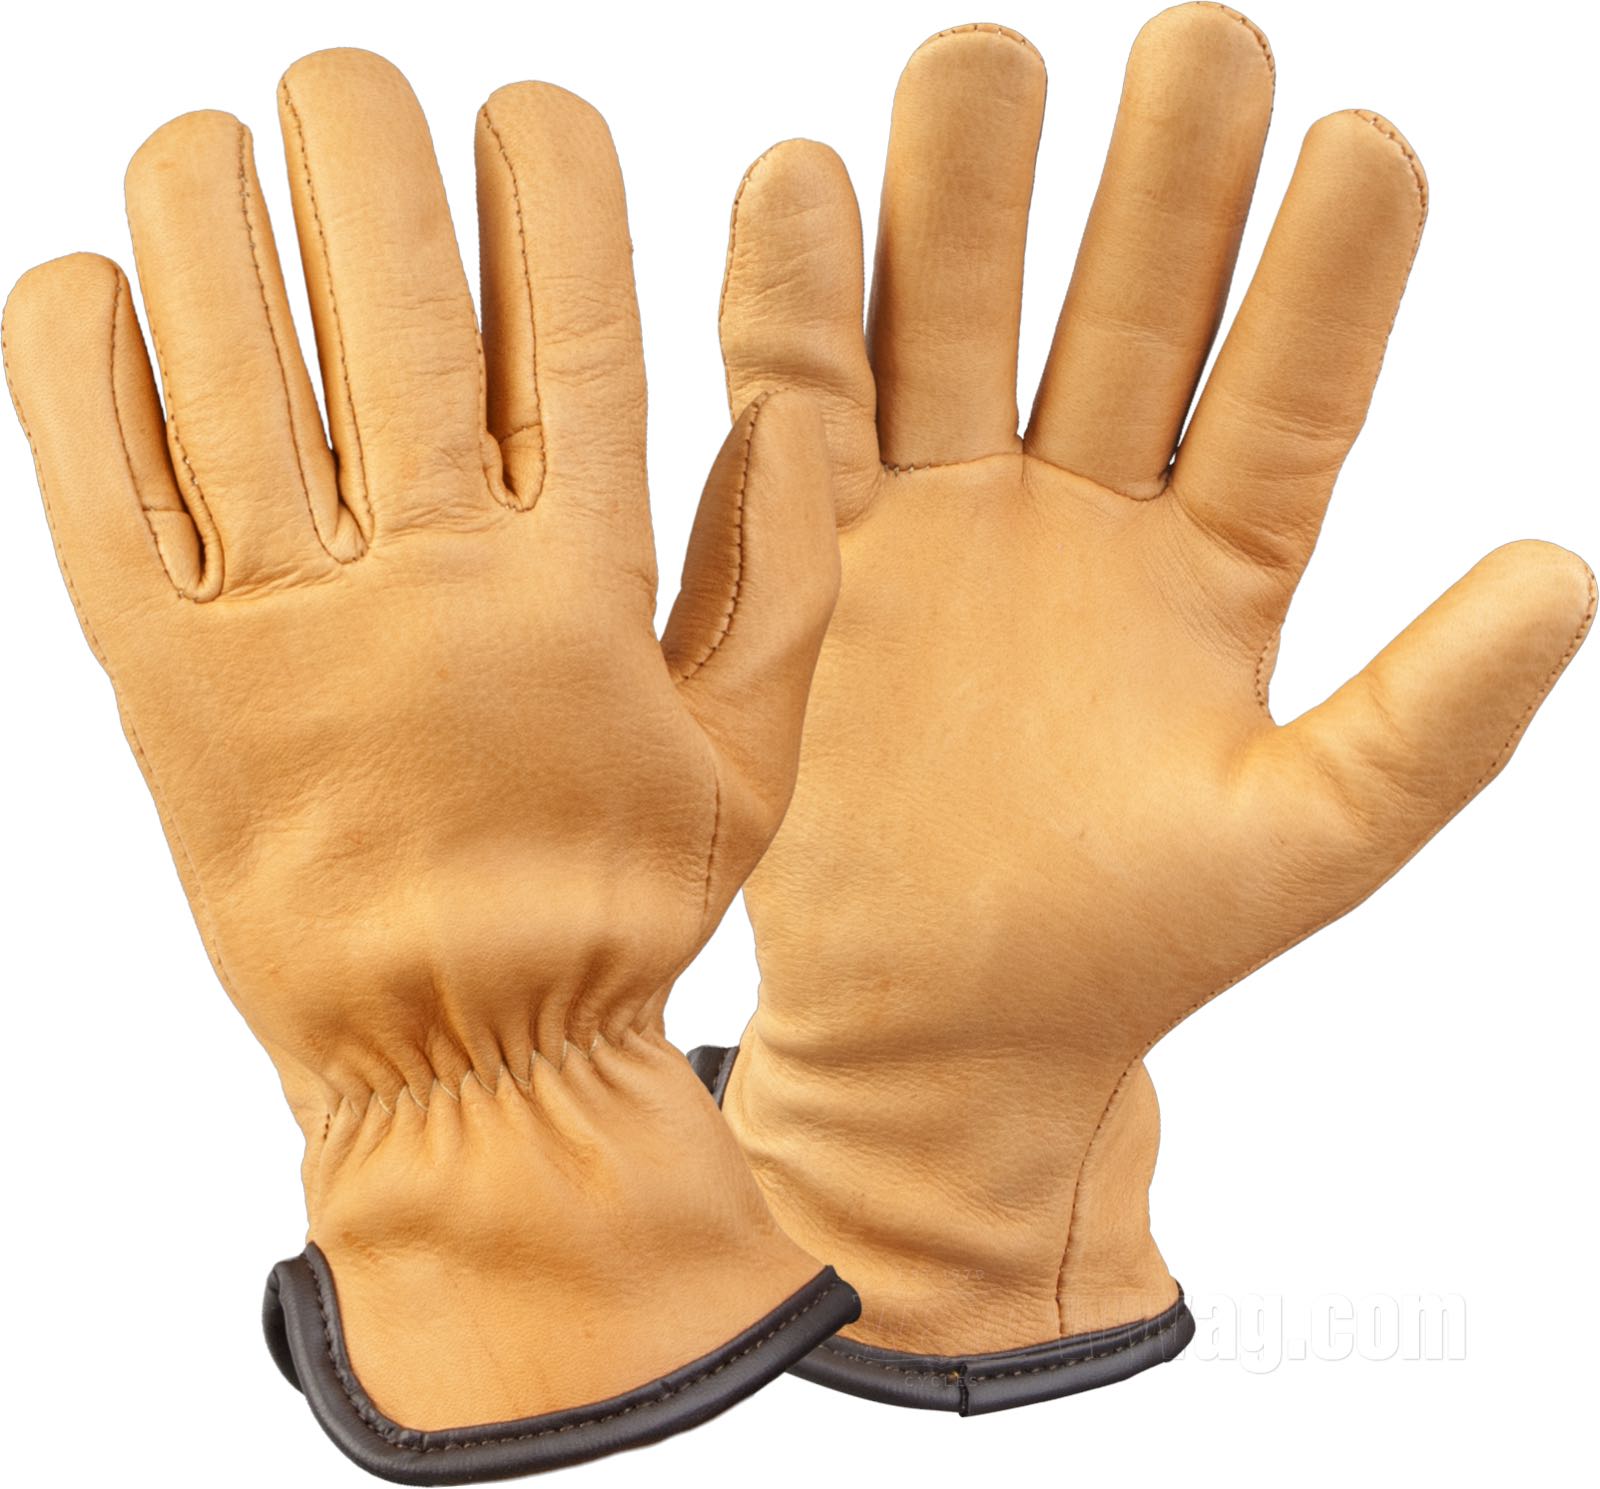 W&W Cycles - Gloves »Mod. 204ES« by Geier